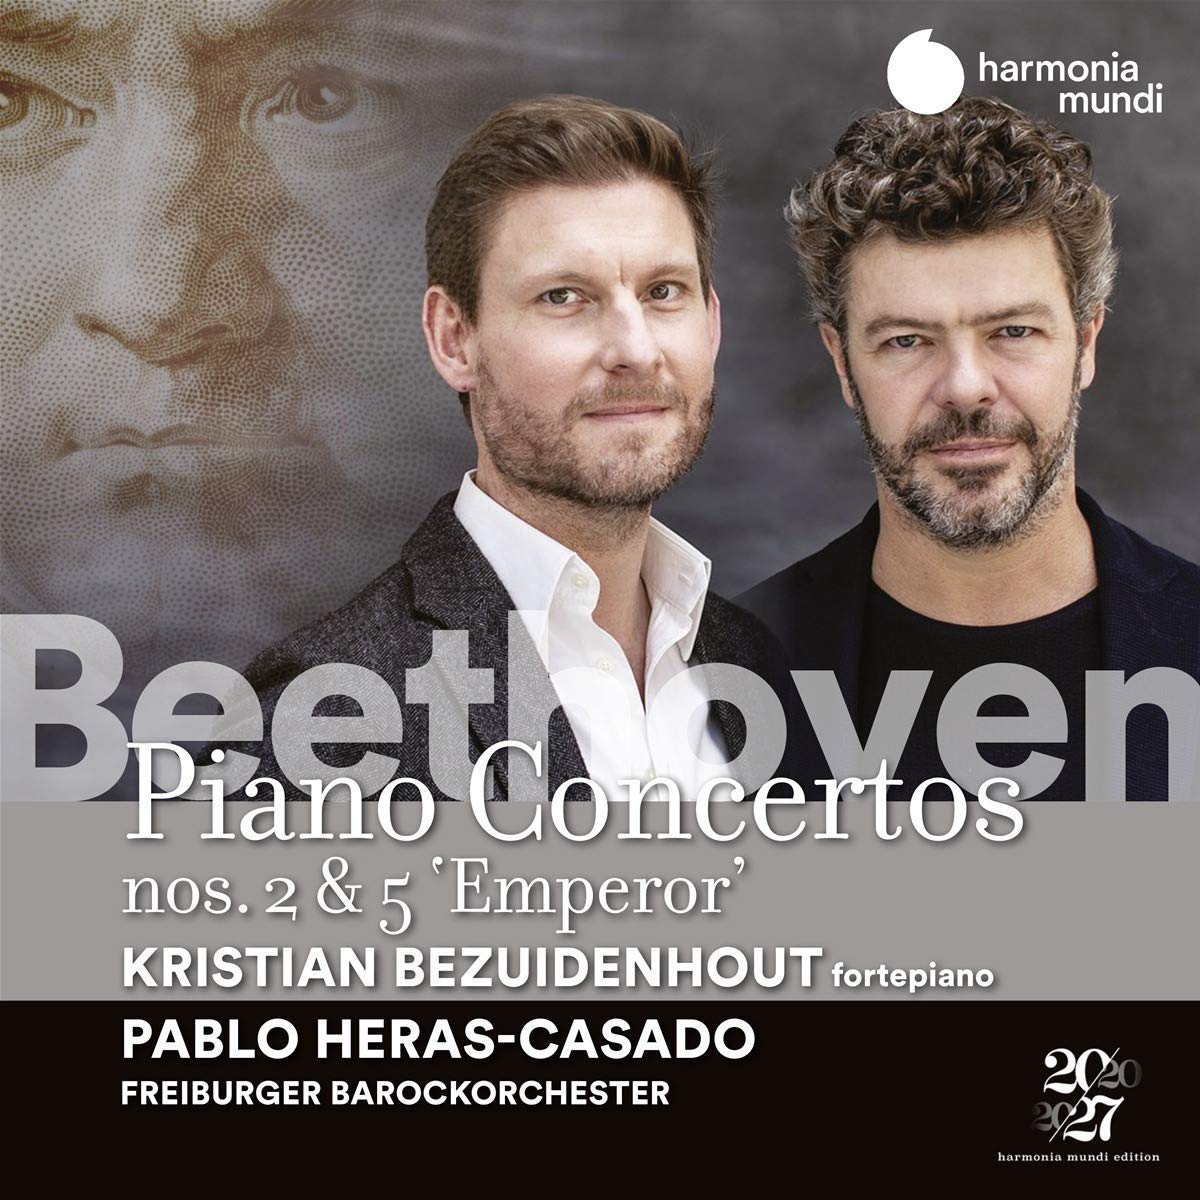 24 - Kristian Bezuidenhout, Freiburger Barockorchester/Pablo Heras-Casado - Beethoven: Piano Concertos Nos. 2 & 5 "Emperor"